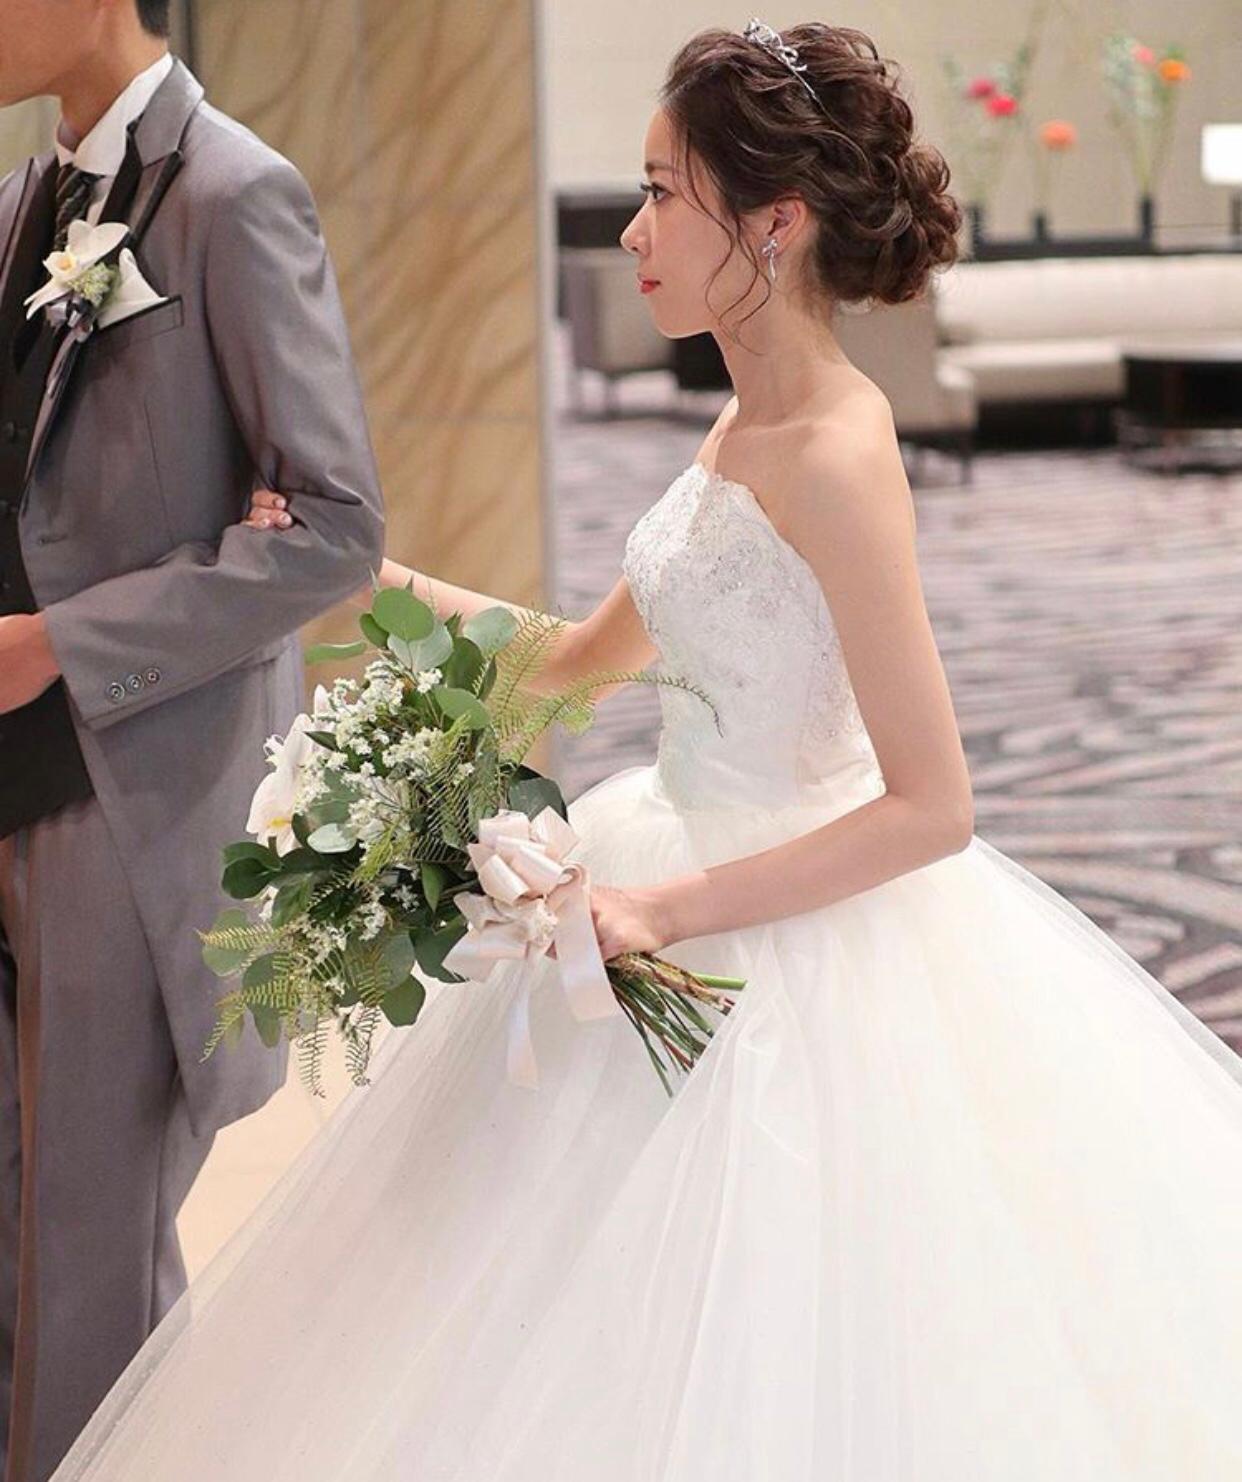 婚禮統籌師專欄文章Queeny Ng: 婚紗創造出獨特的款式